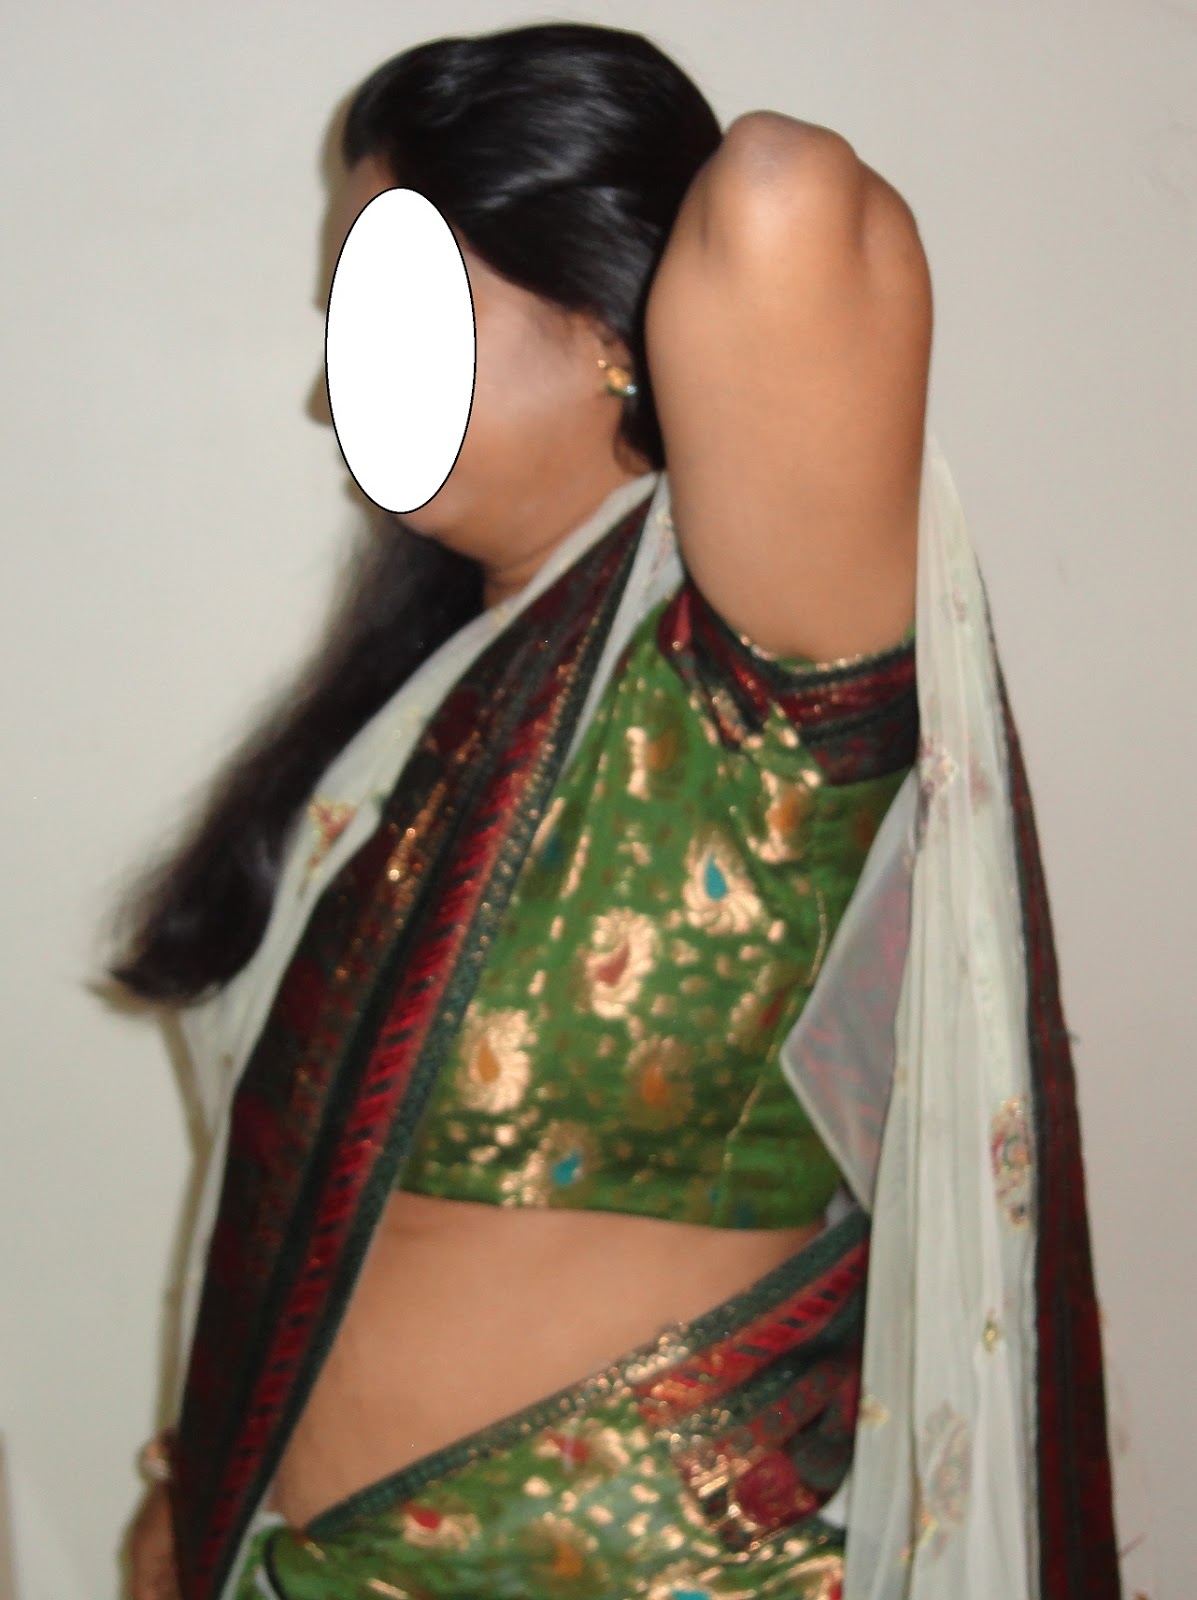 andhamina bhamalu indian house wife nudity